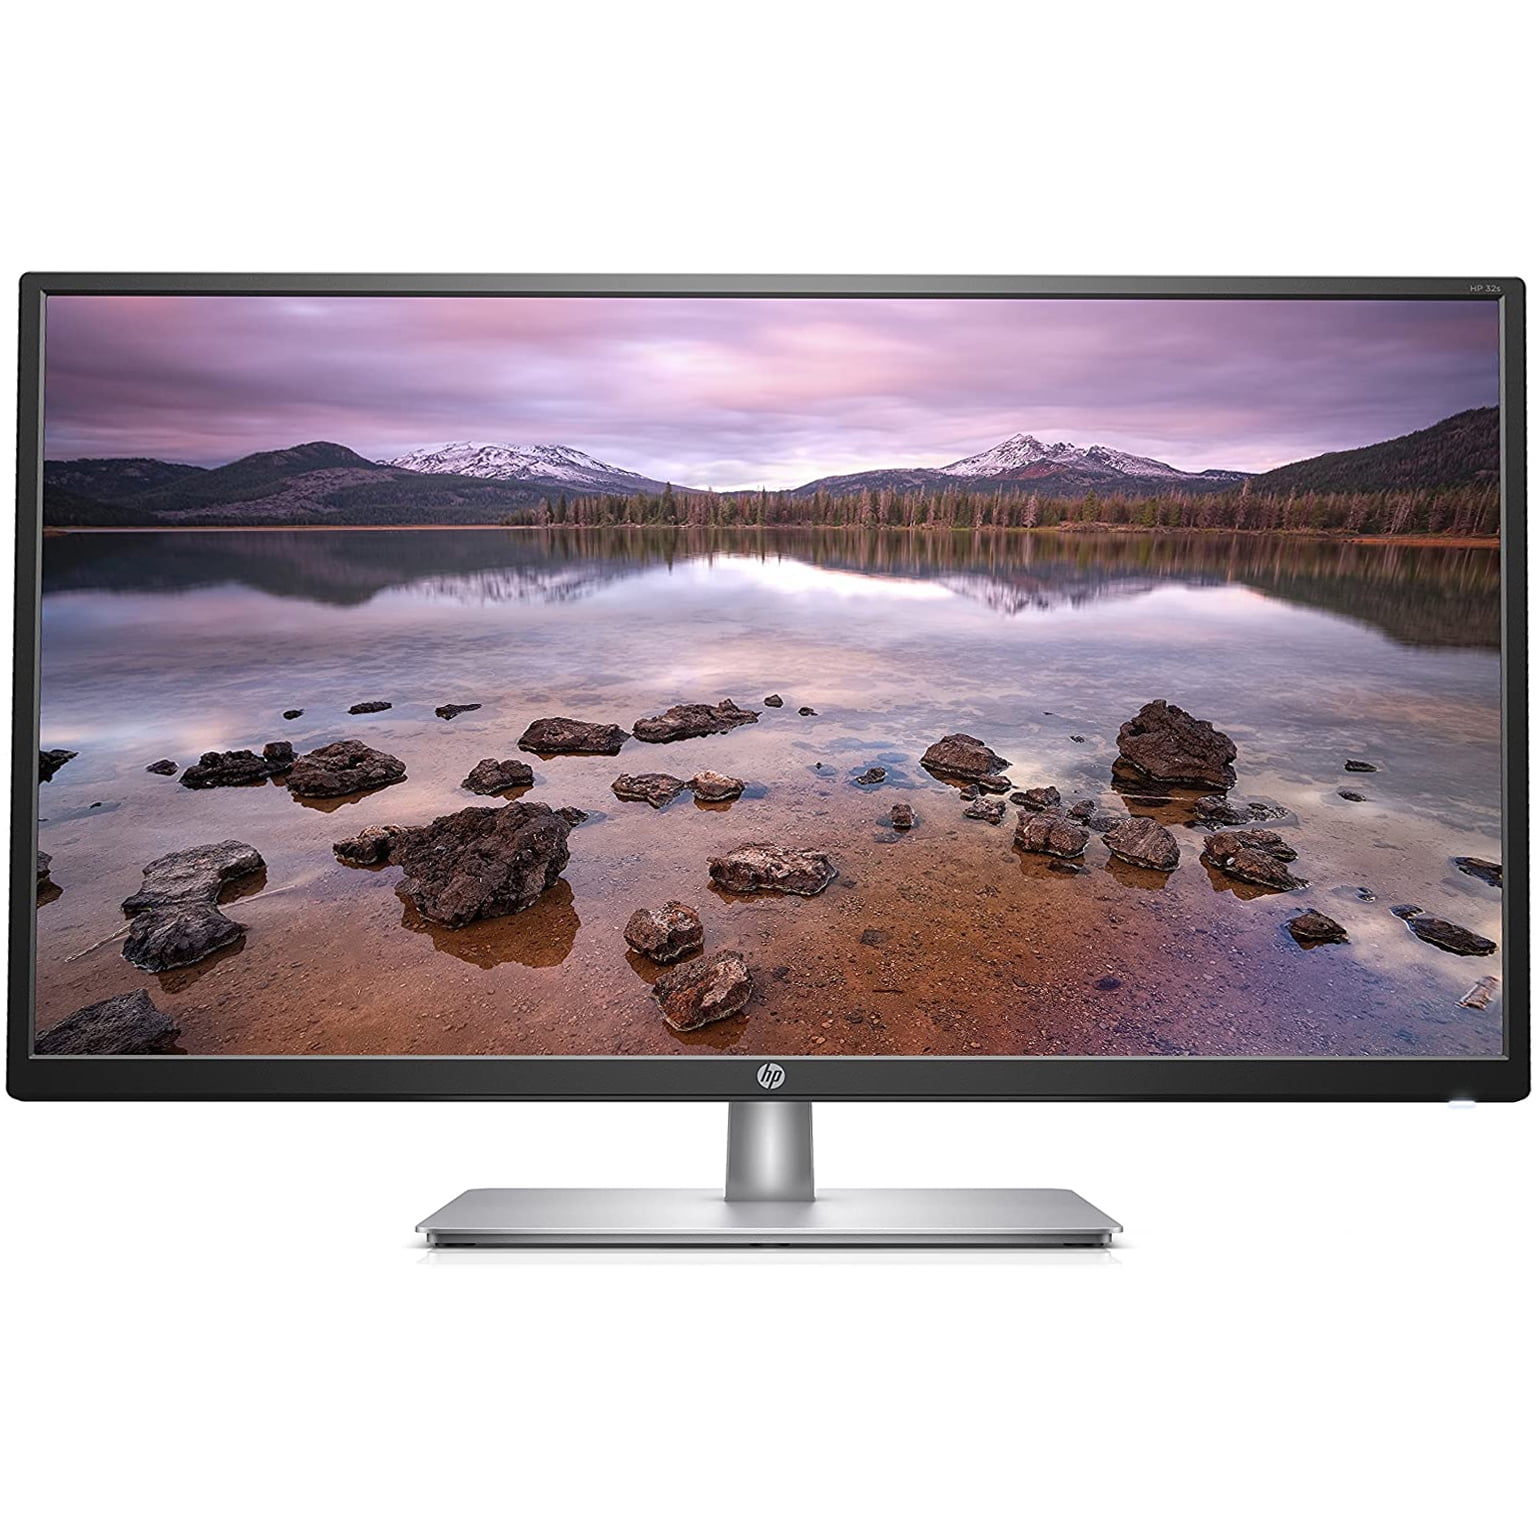 Refurbished HP 32s 32" LED IPS LCD 1080p Monitor HDMI VGA - Black Silver - 2UD96AAT